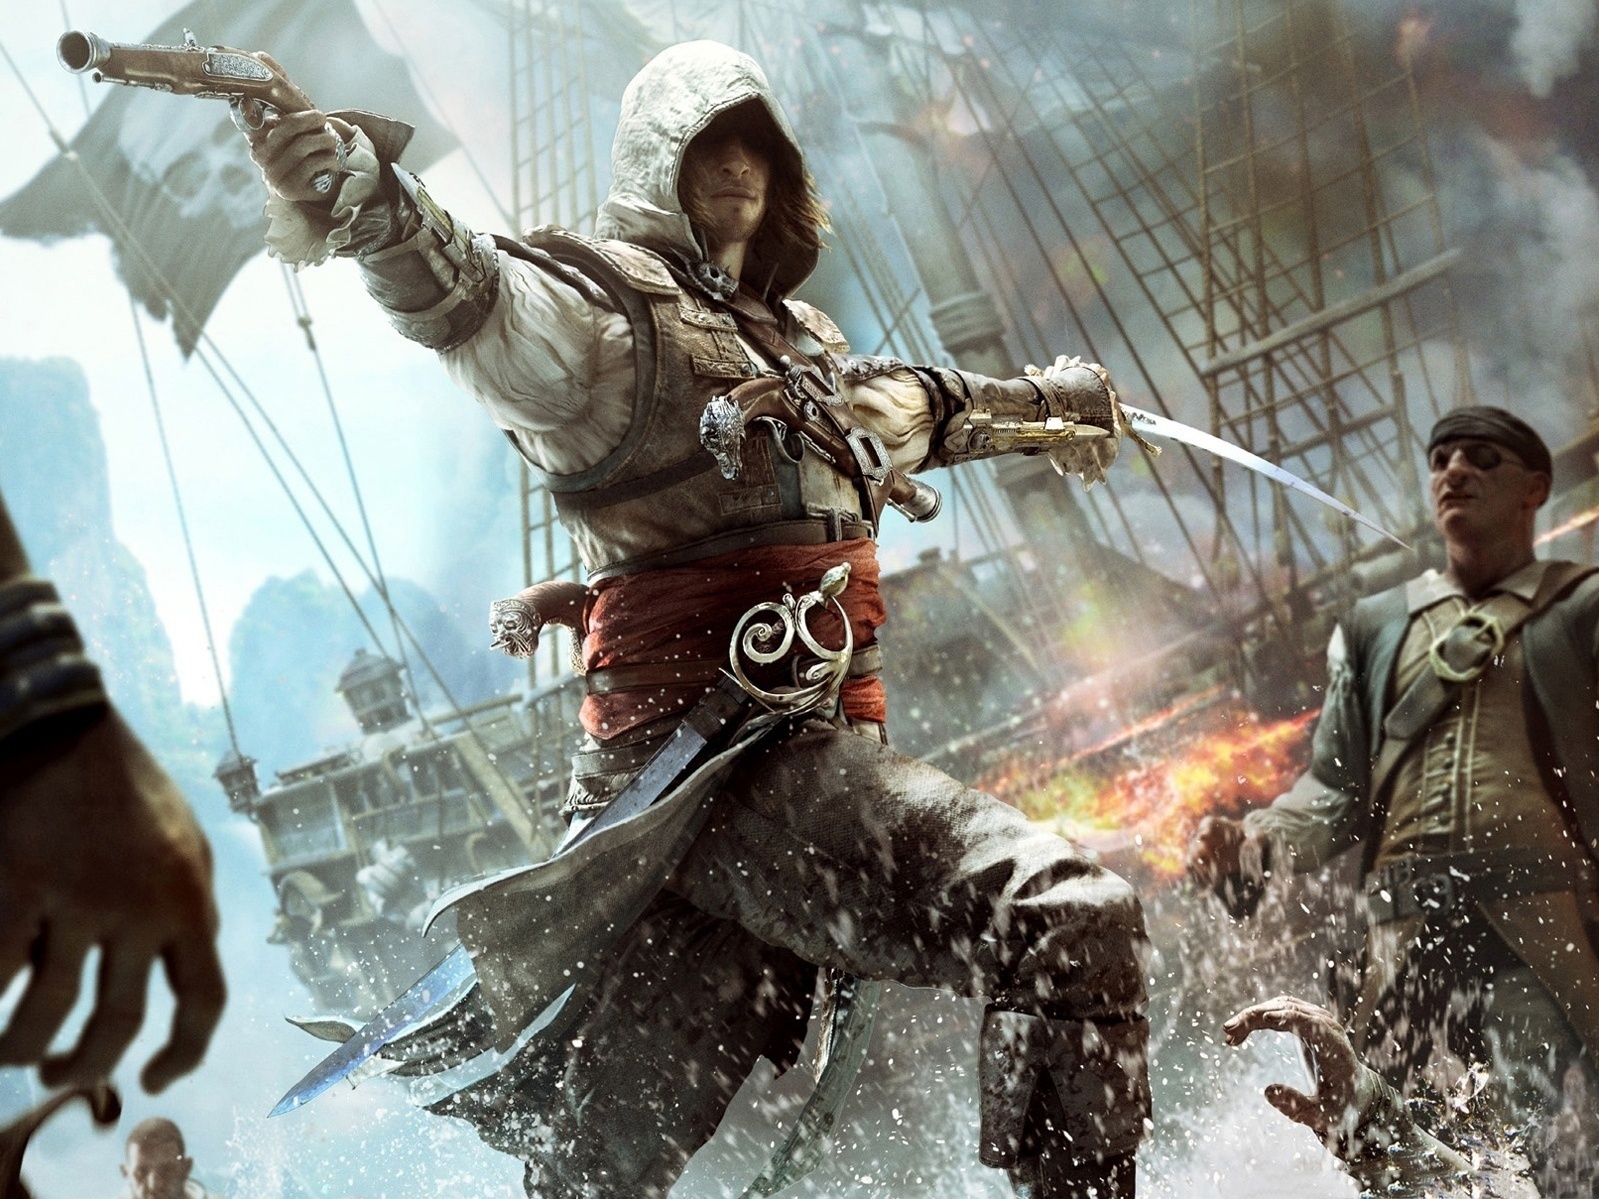 Assassin's Creed: veja a evolução de gráficos dos jogos da franquia